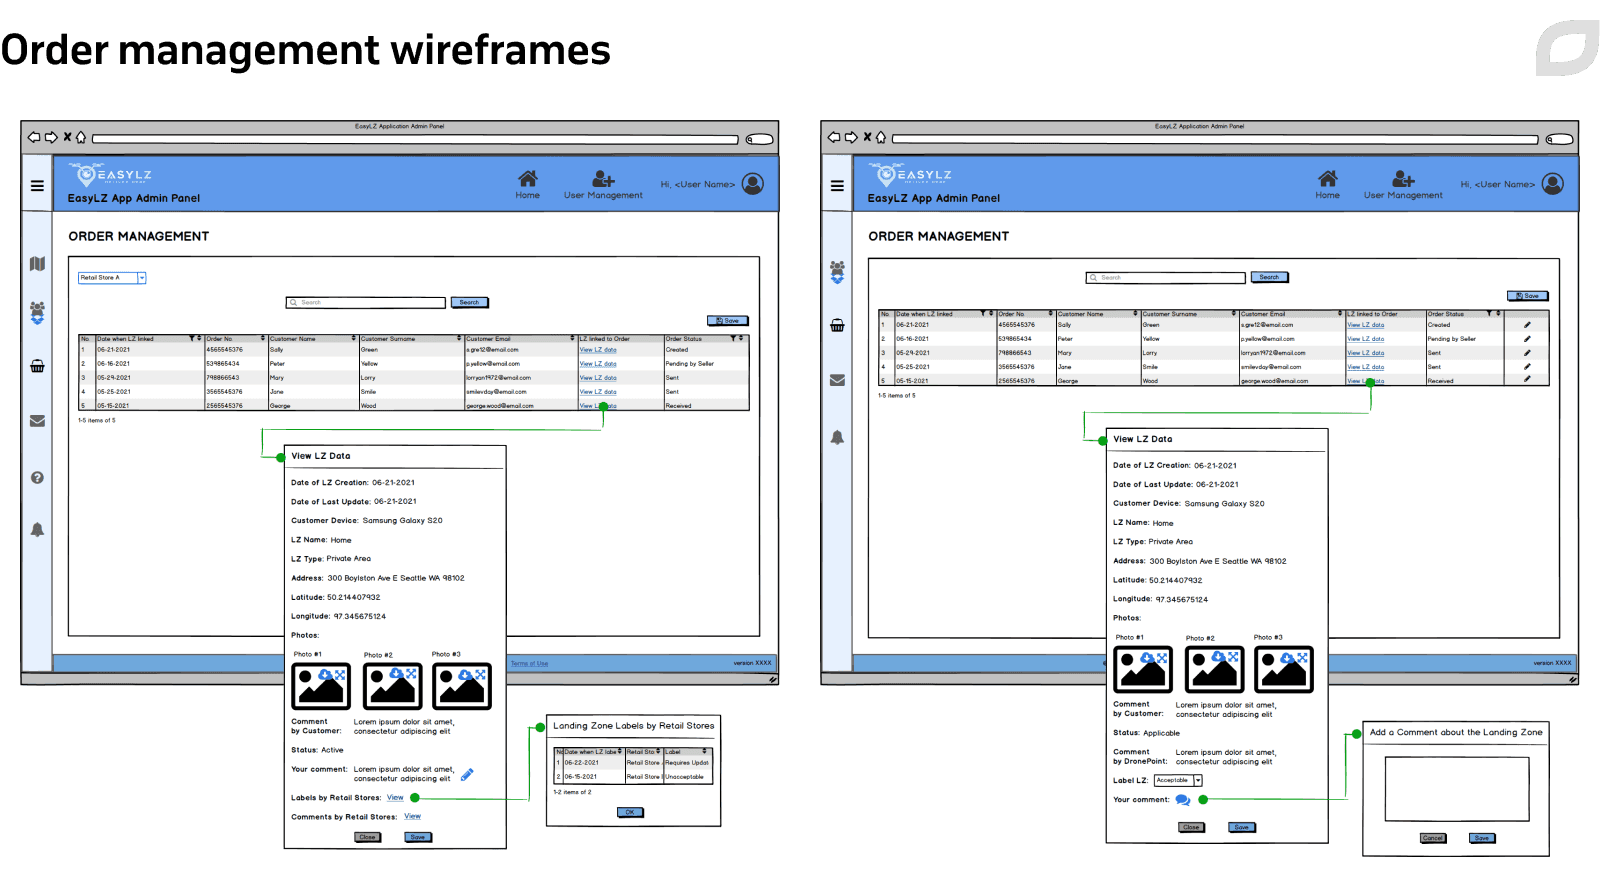 Order management wireframes